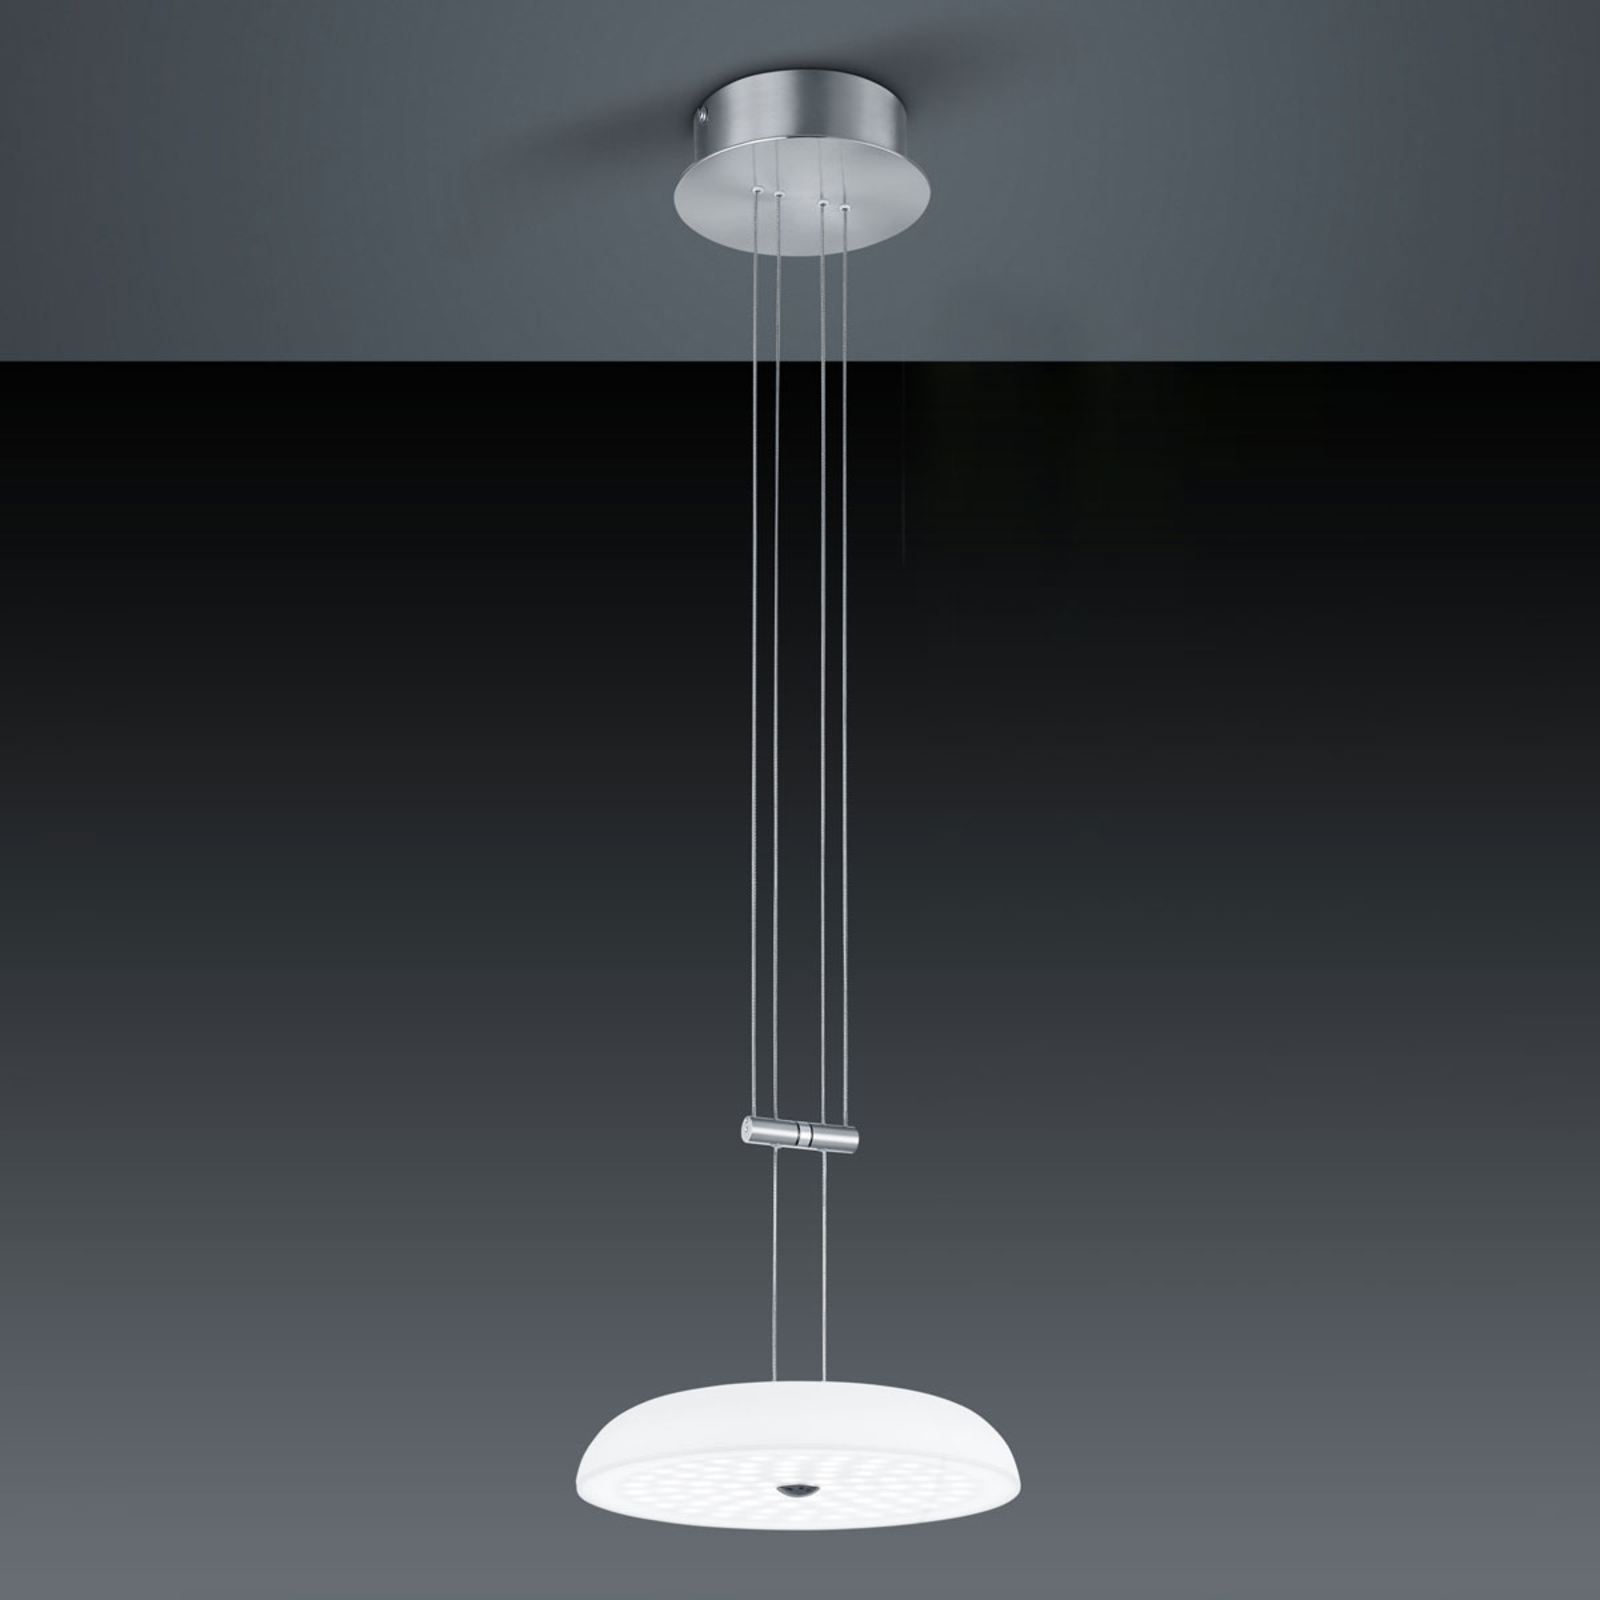 BANKAMP Vanity hanglamp 1 lampje nikkel Ø 25 cm